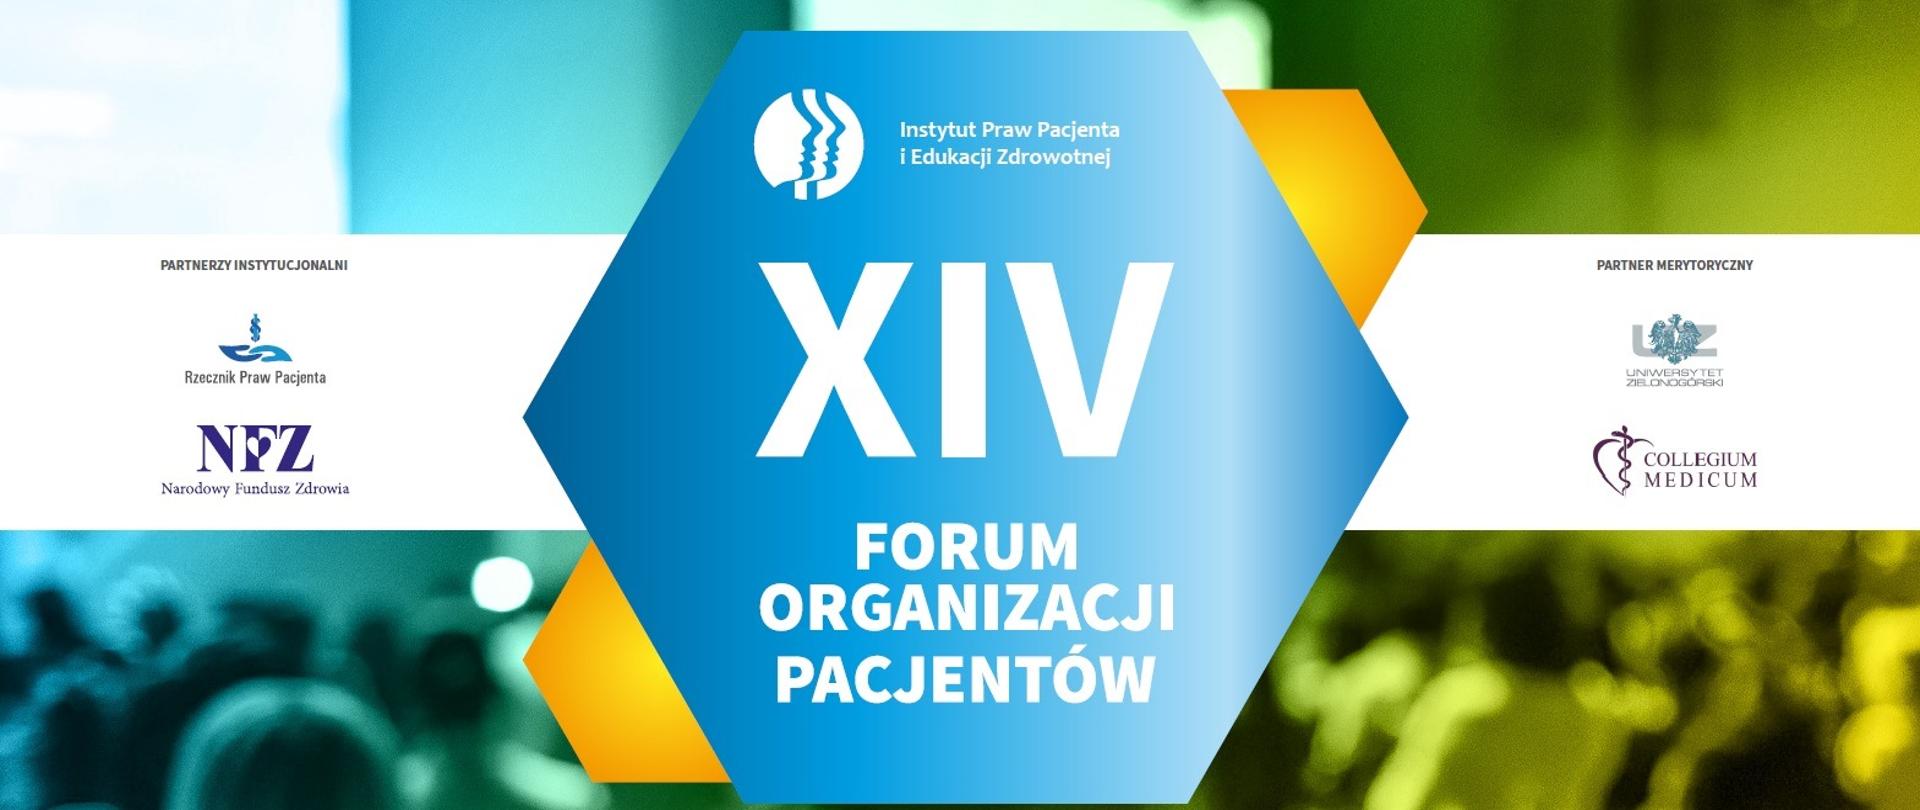 Forum Organizacji Pacjentów